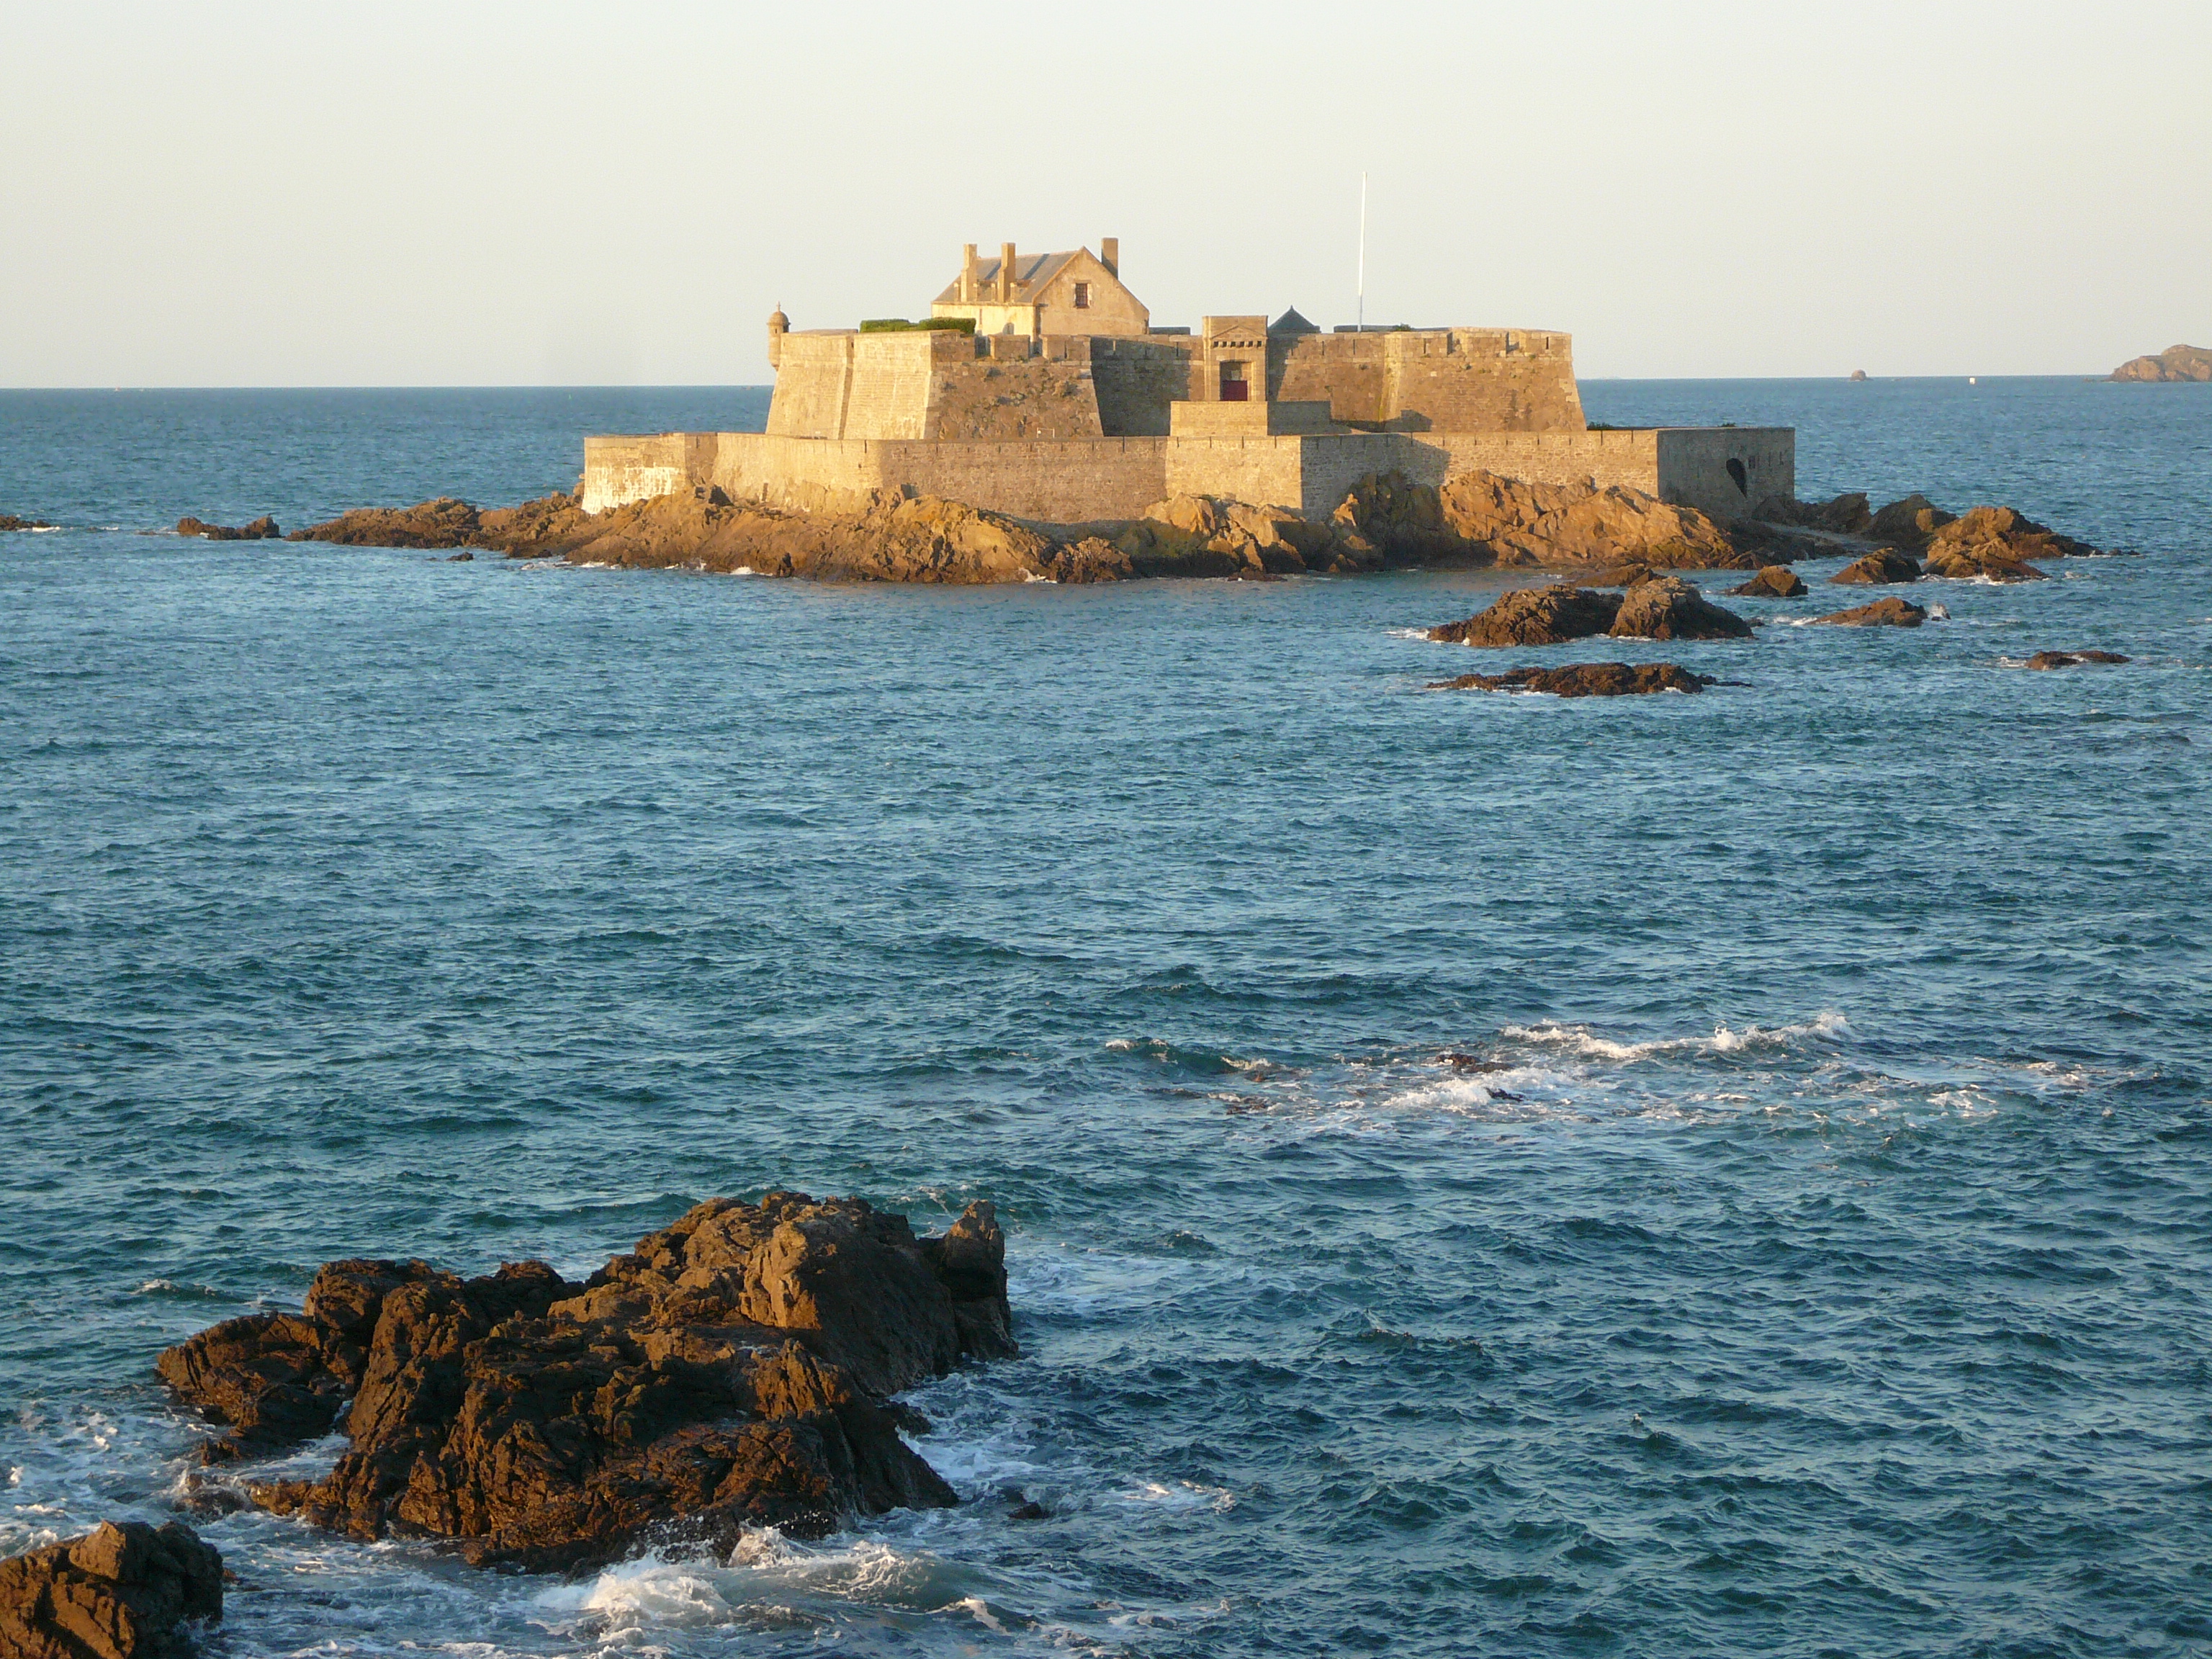 File:Fort-La-Reine-Saint-Malo-by-Rundvald.JPG - Wikimedia Commons